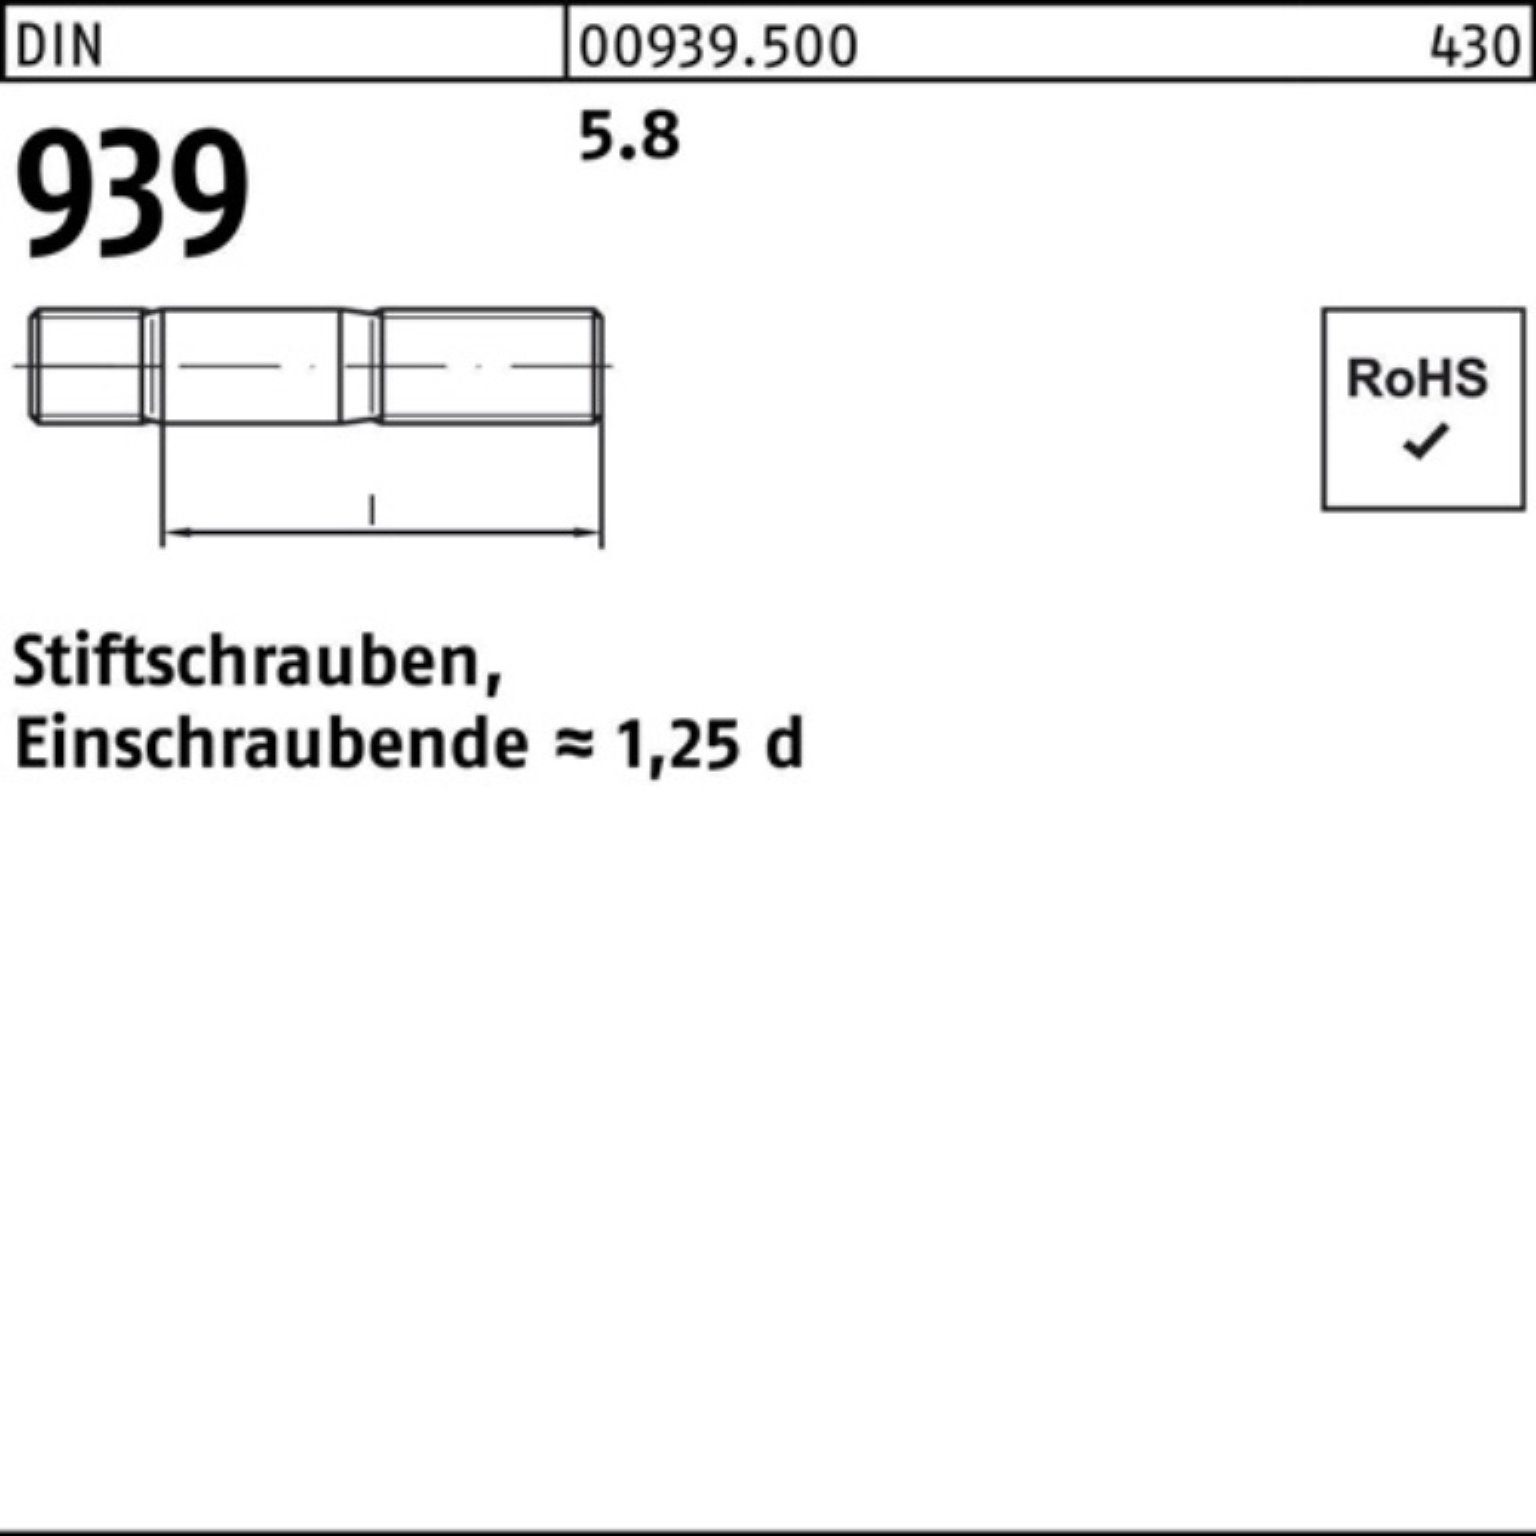 939 Reyher 50 Stiftschraube Stiftschraube M12x S 100er 65 DIN Pack Einschraubende=1,25d 5.8